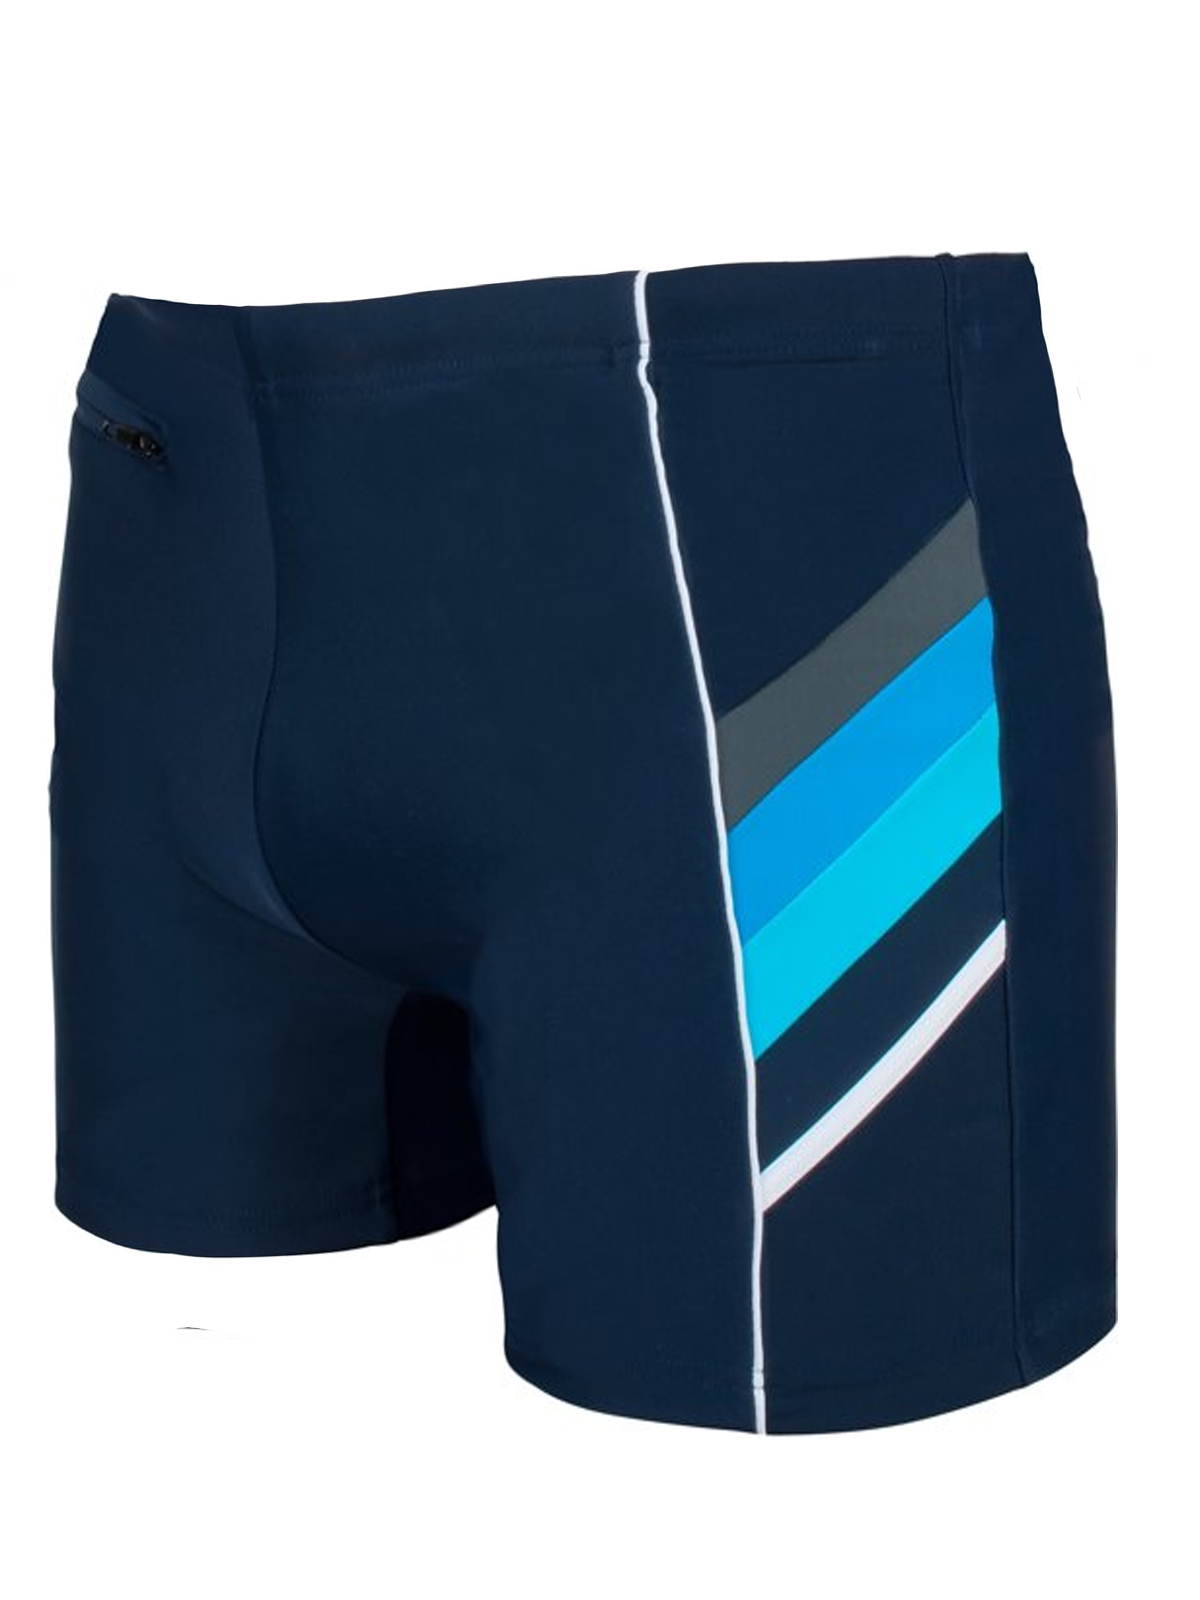 Naturana - - Naturana NAVY Printed Side Swimming Shorts - Size Medium ...